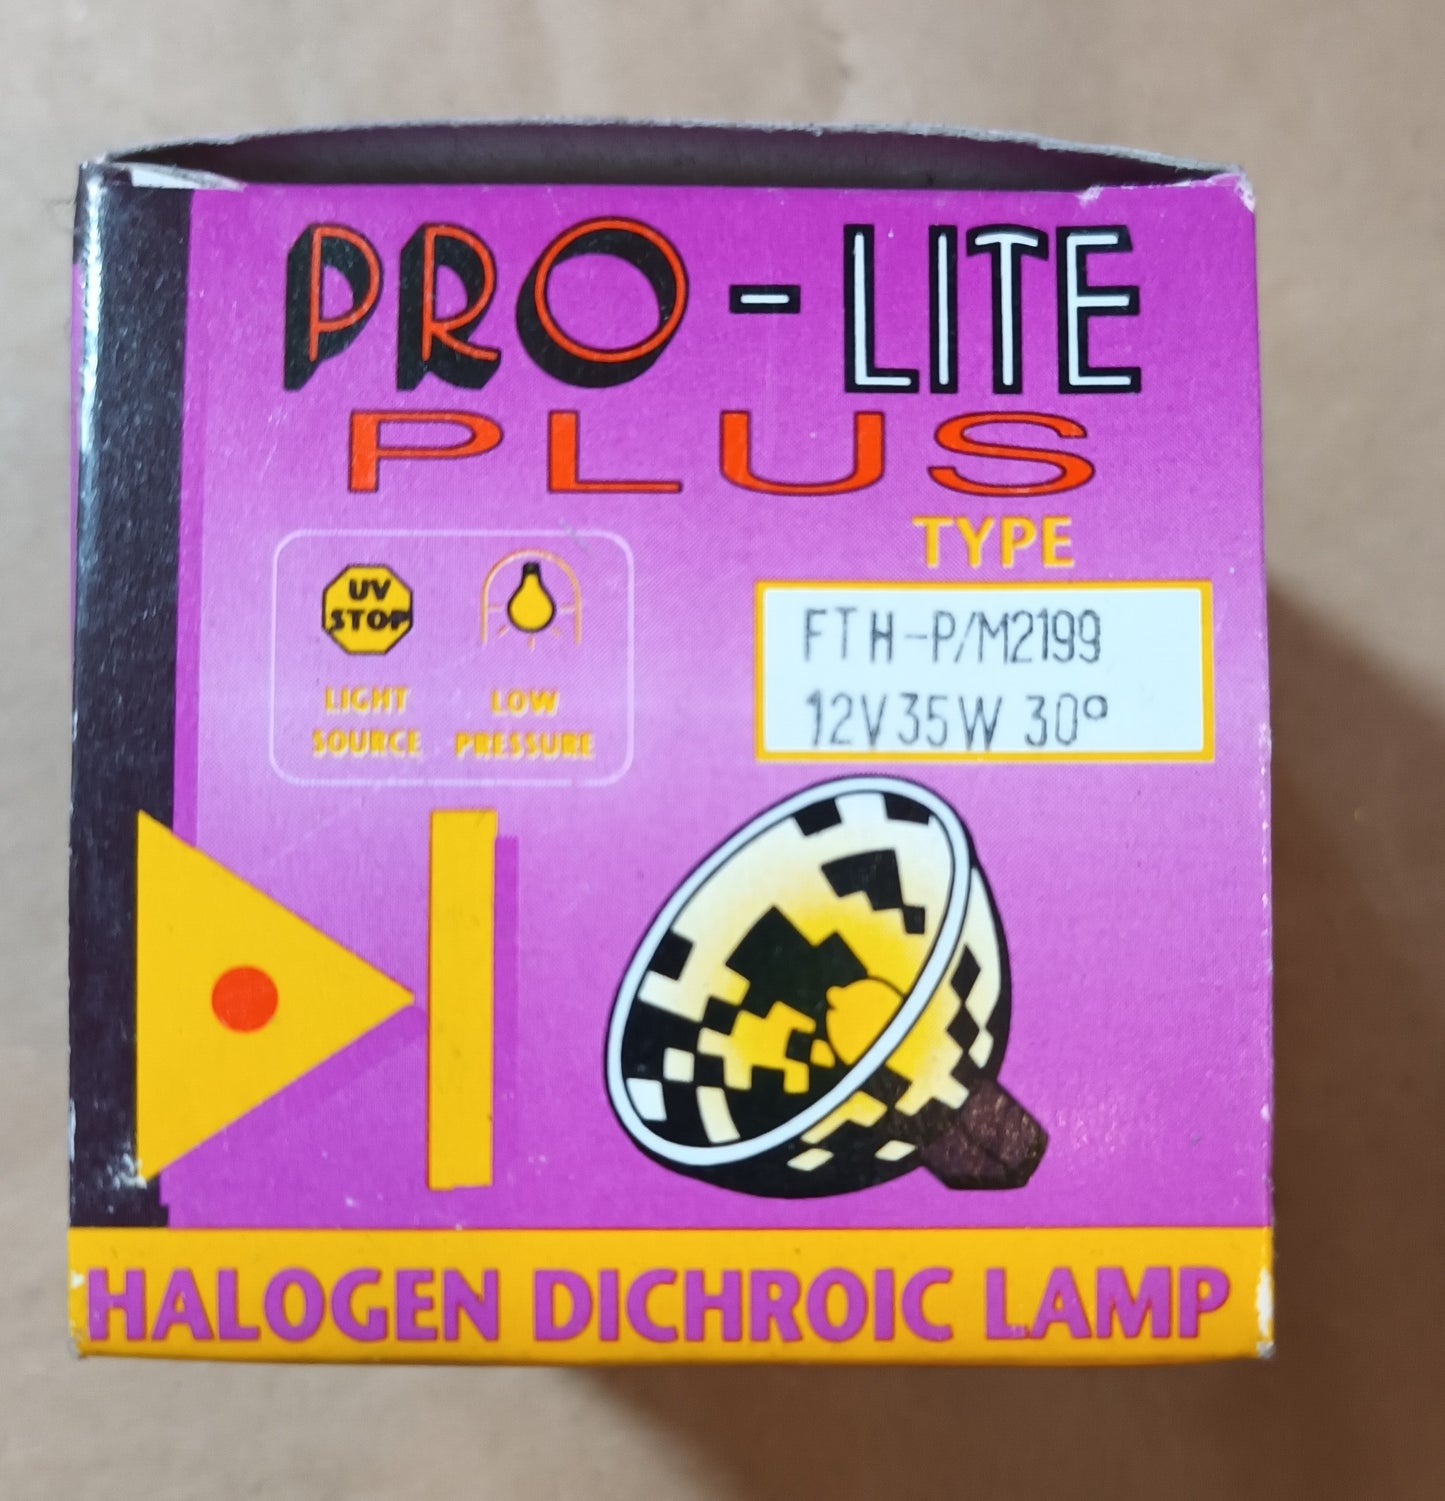 MR11 35 watt 12 volt Halogen Dichroic Lamp 30°Degree Beam by Pro-lite